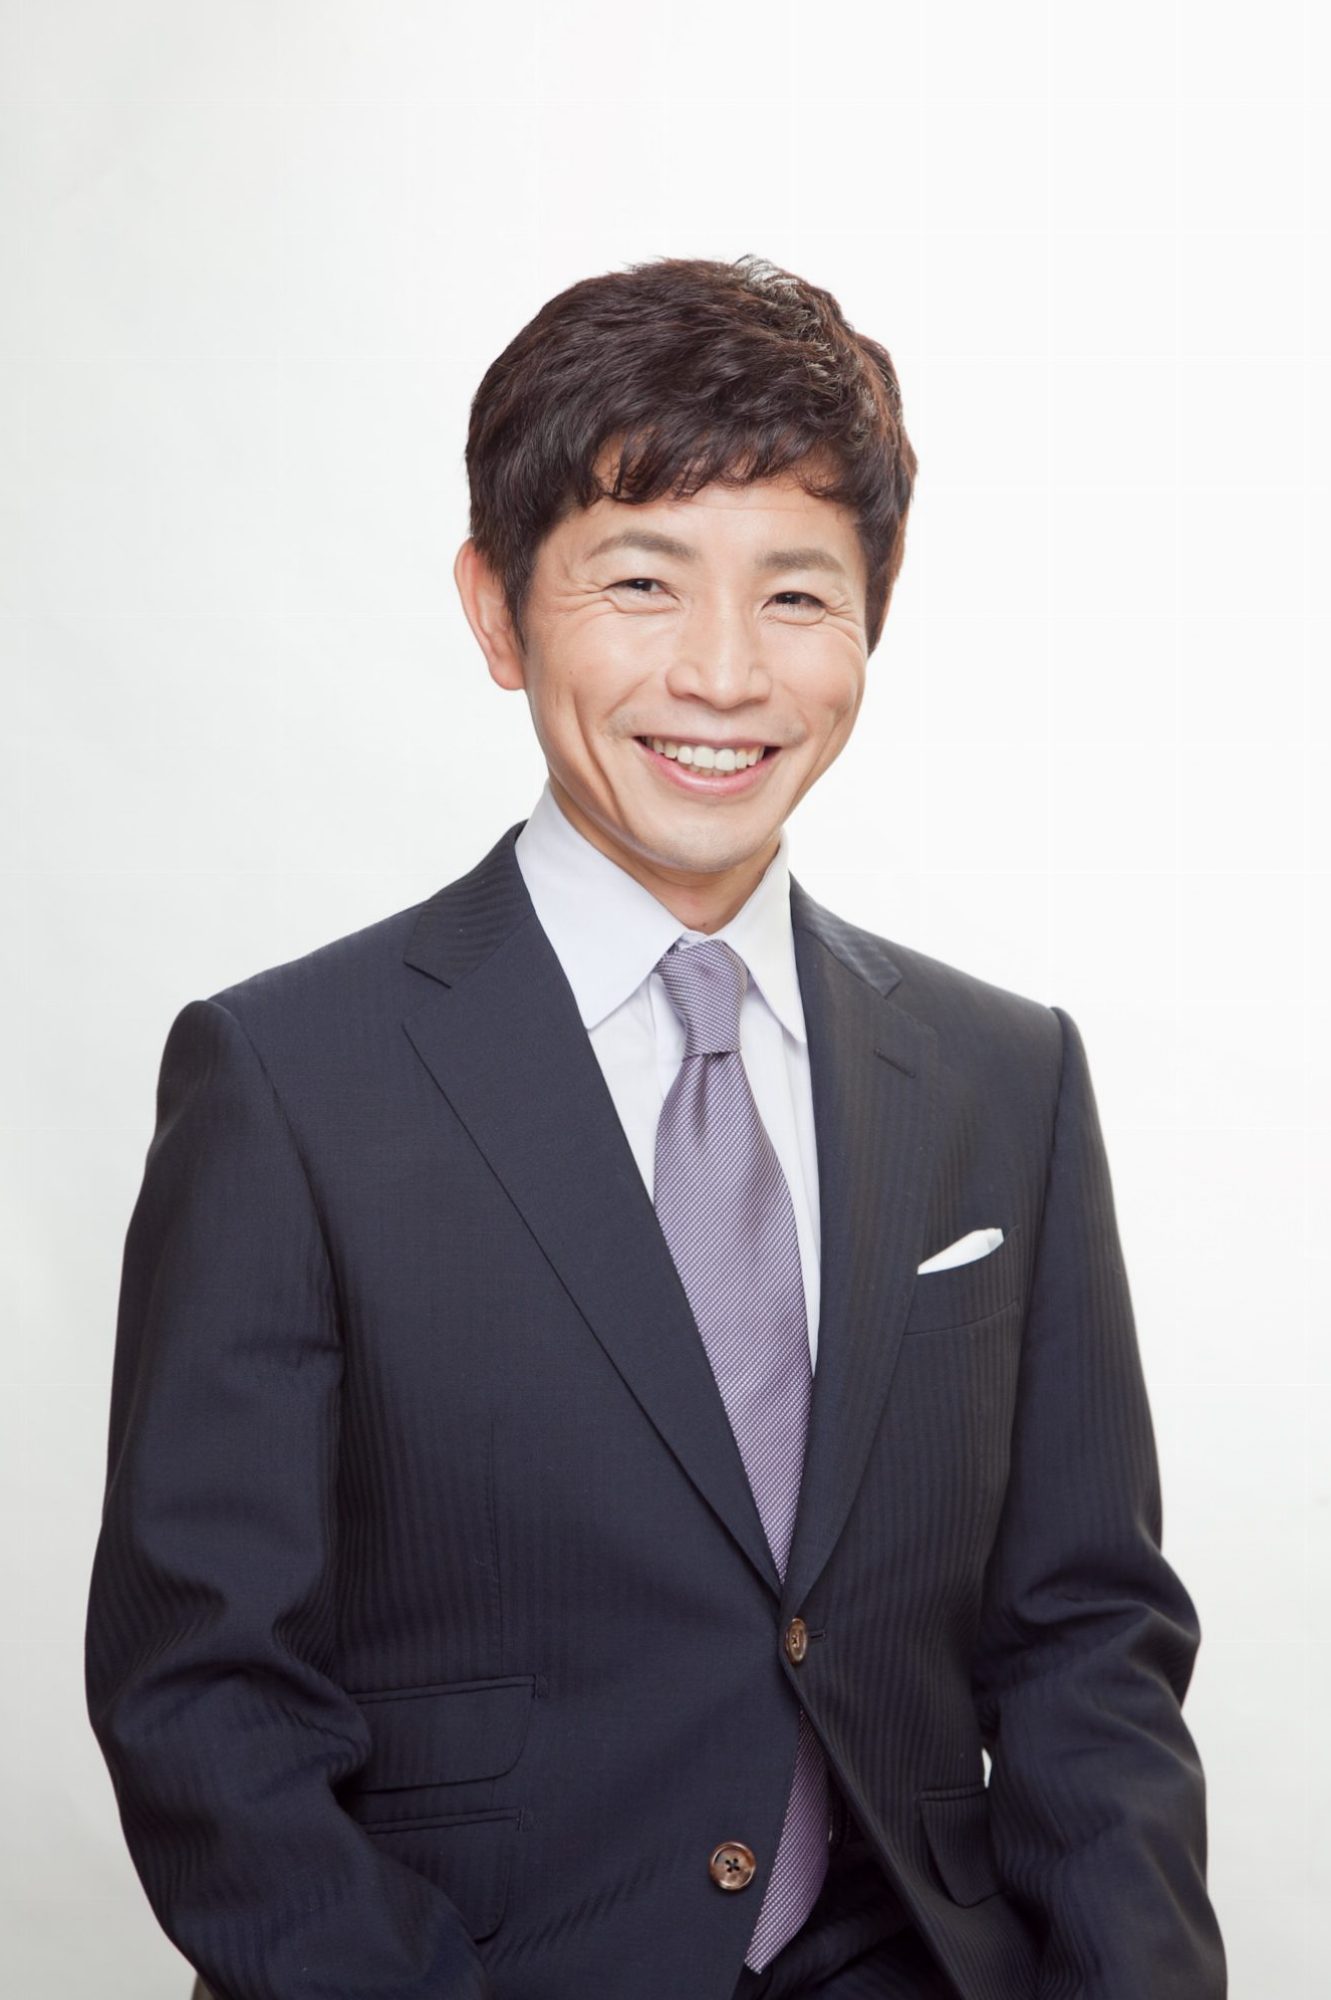 Masayuki Sano